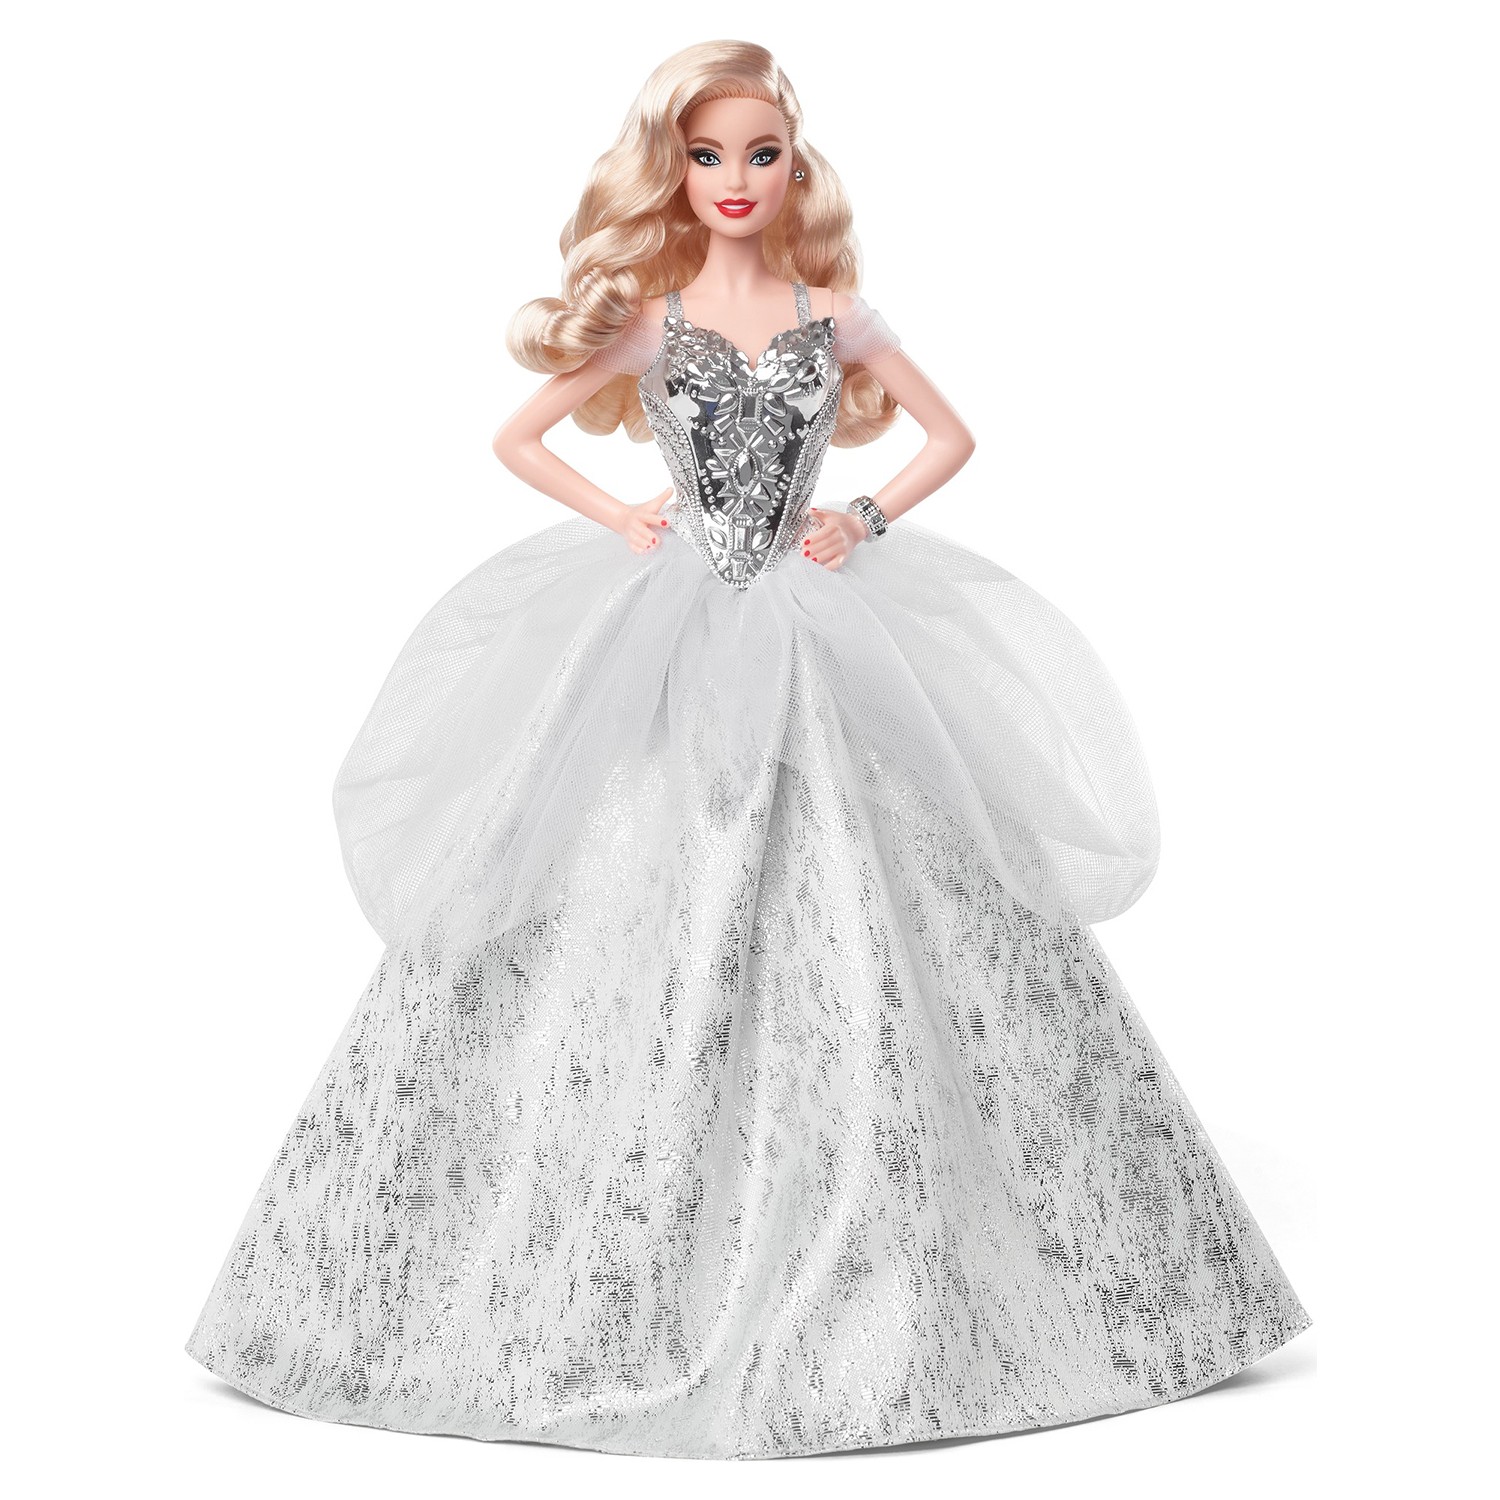 Кукла Barbie Holiday 2021 с волнистыми светлыми волосами